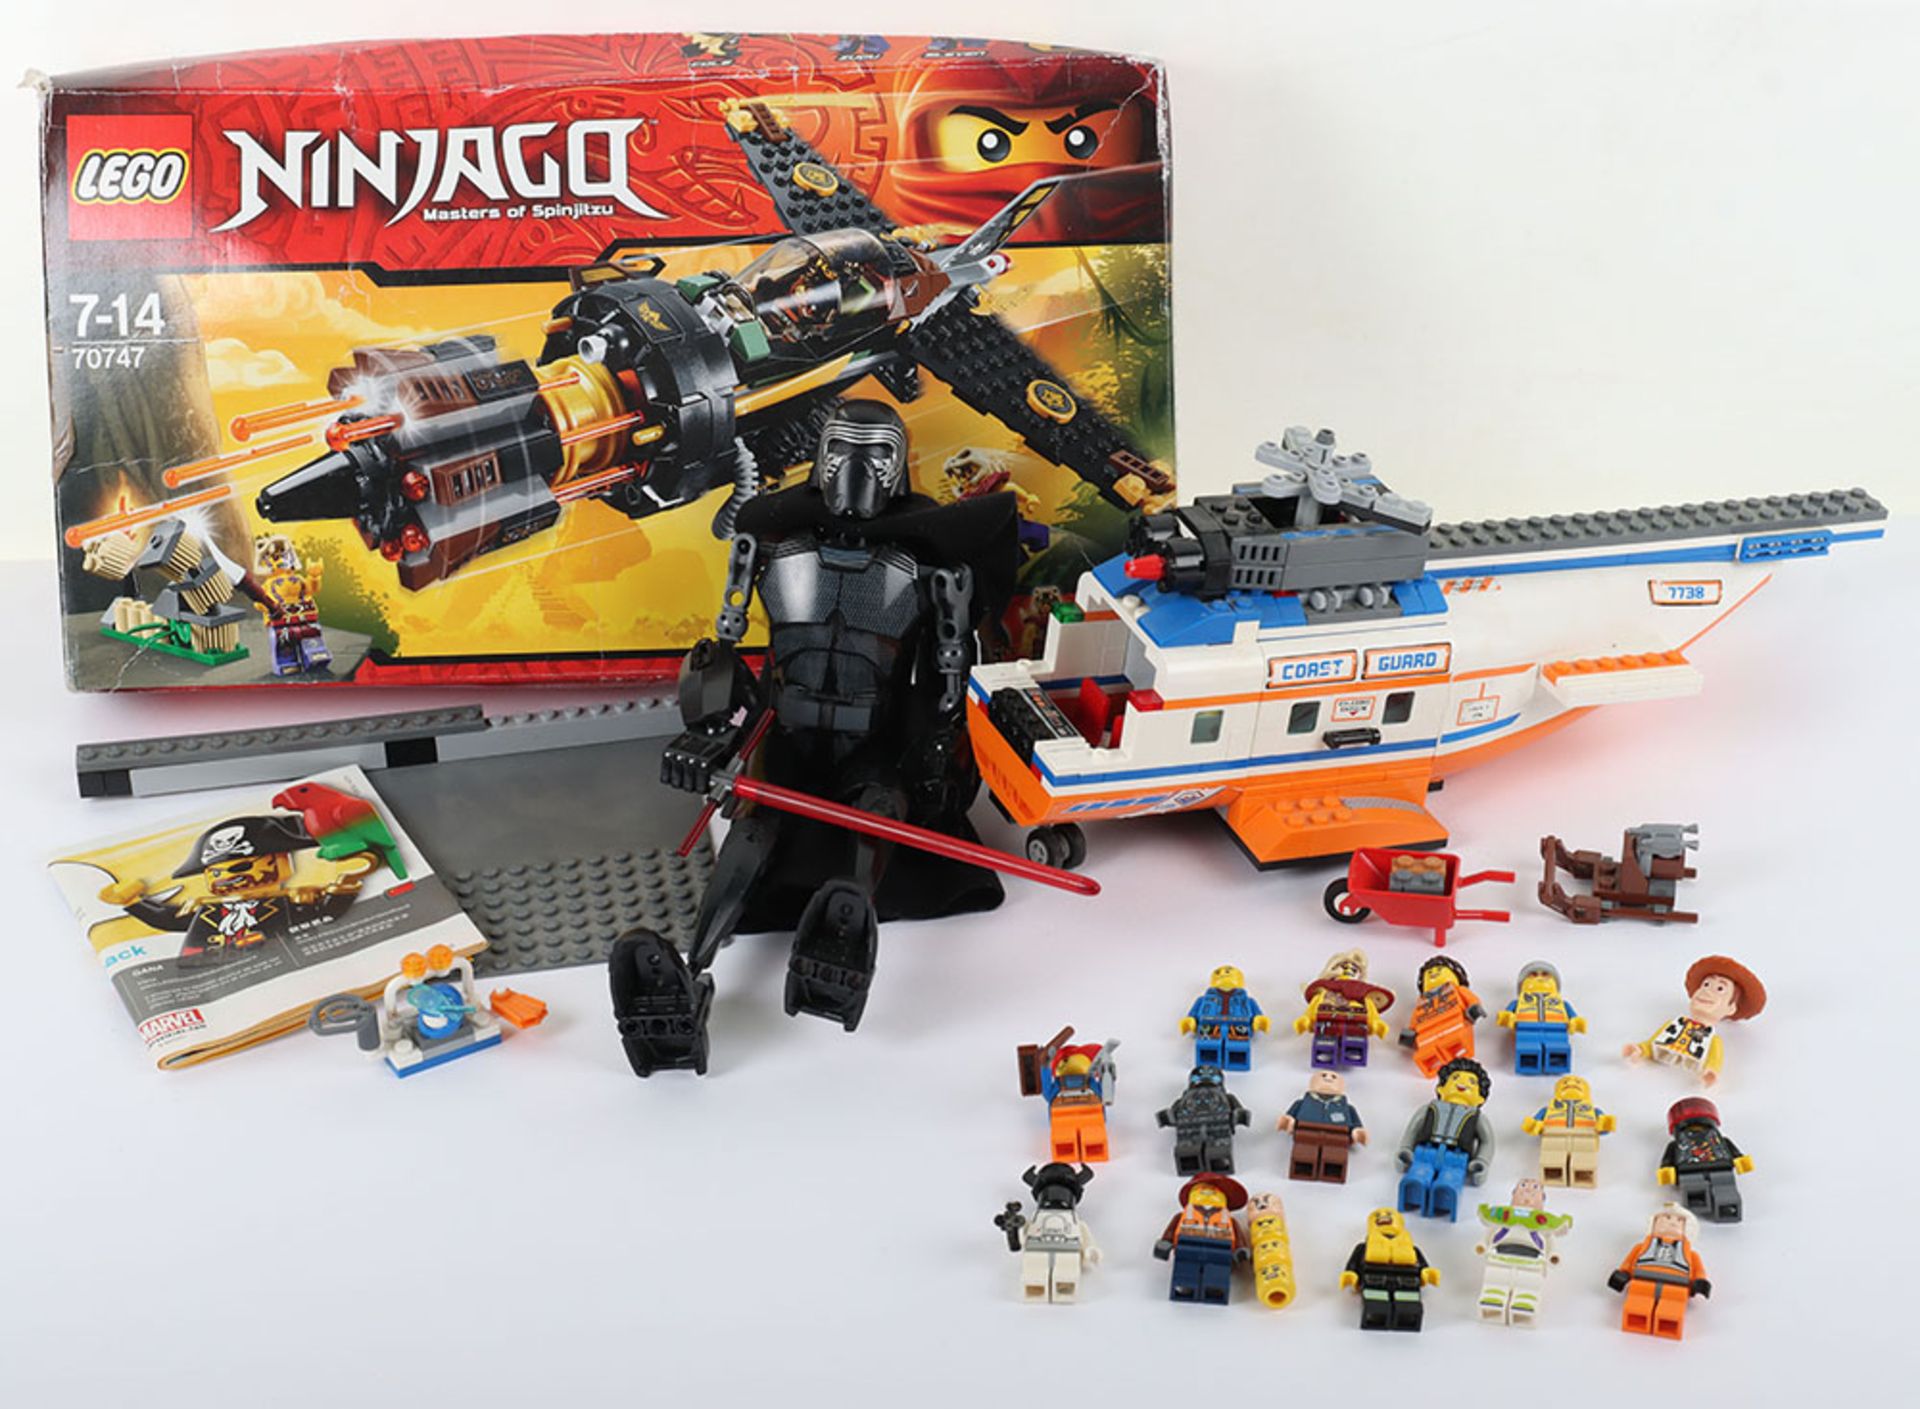 Mixed Lego Ninjago, star wars, city trains and more